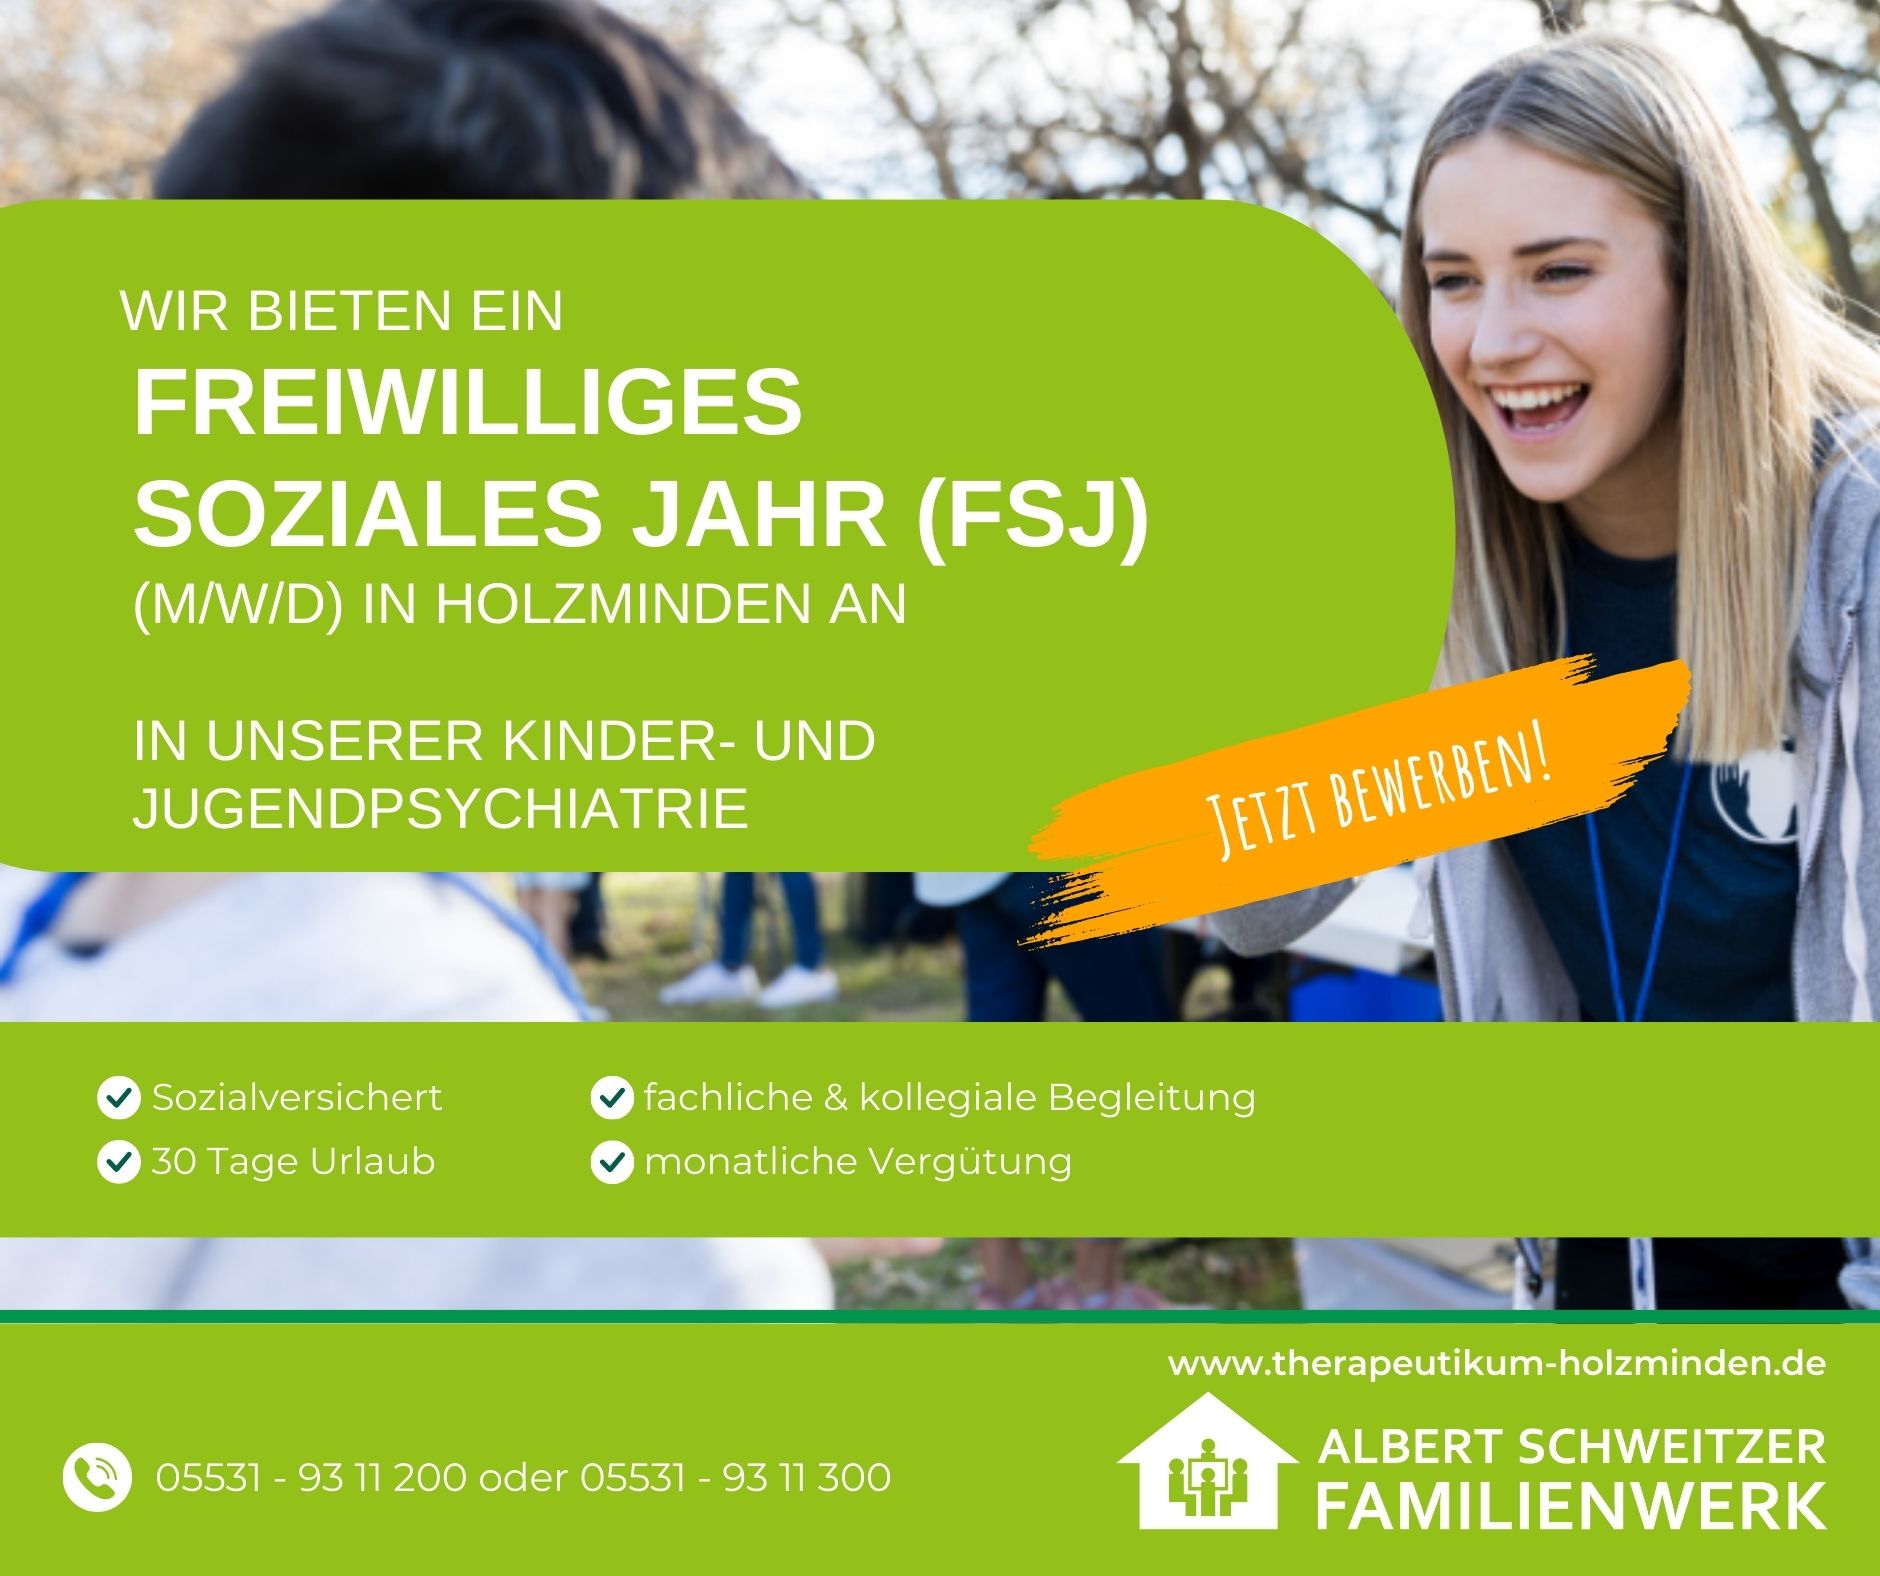 Freiwilliges Soziales Jahr  (FSJ) (m/w/d) in unserer Kinder- und Jugendpsychiatrie Holzminden - Albert Schweitzer Familienwerk